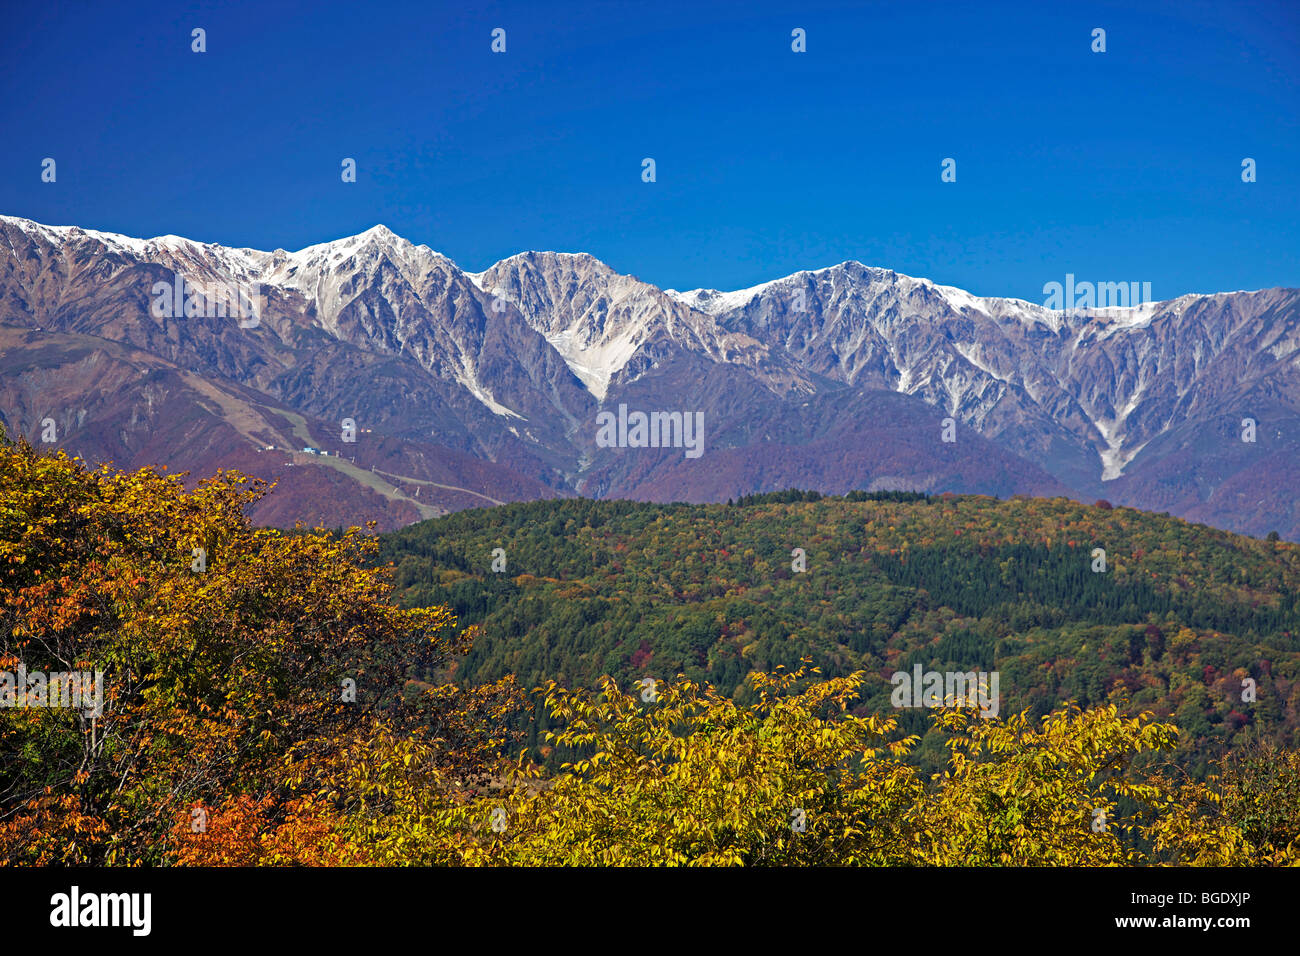 Hakuba mountain range in autumn, Nagano-ken, Japan Stock Photo